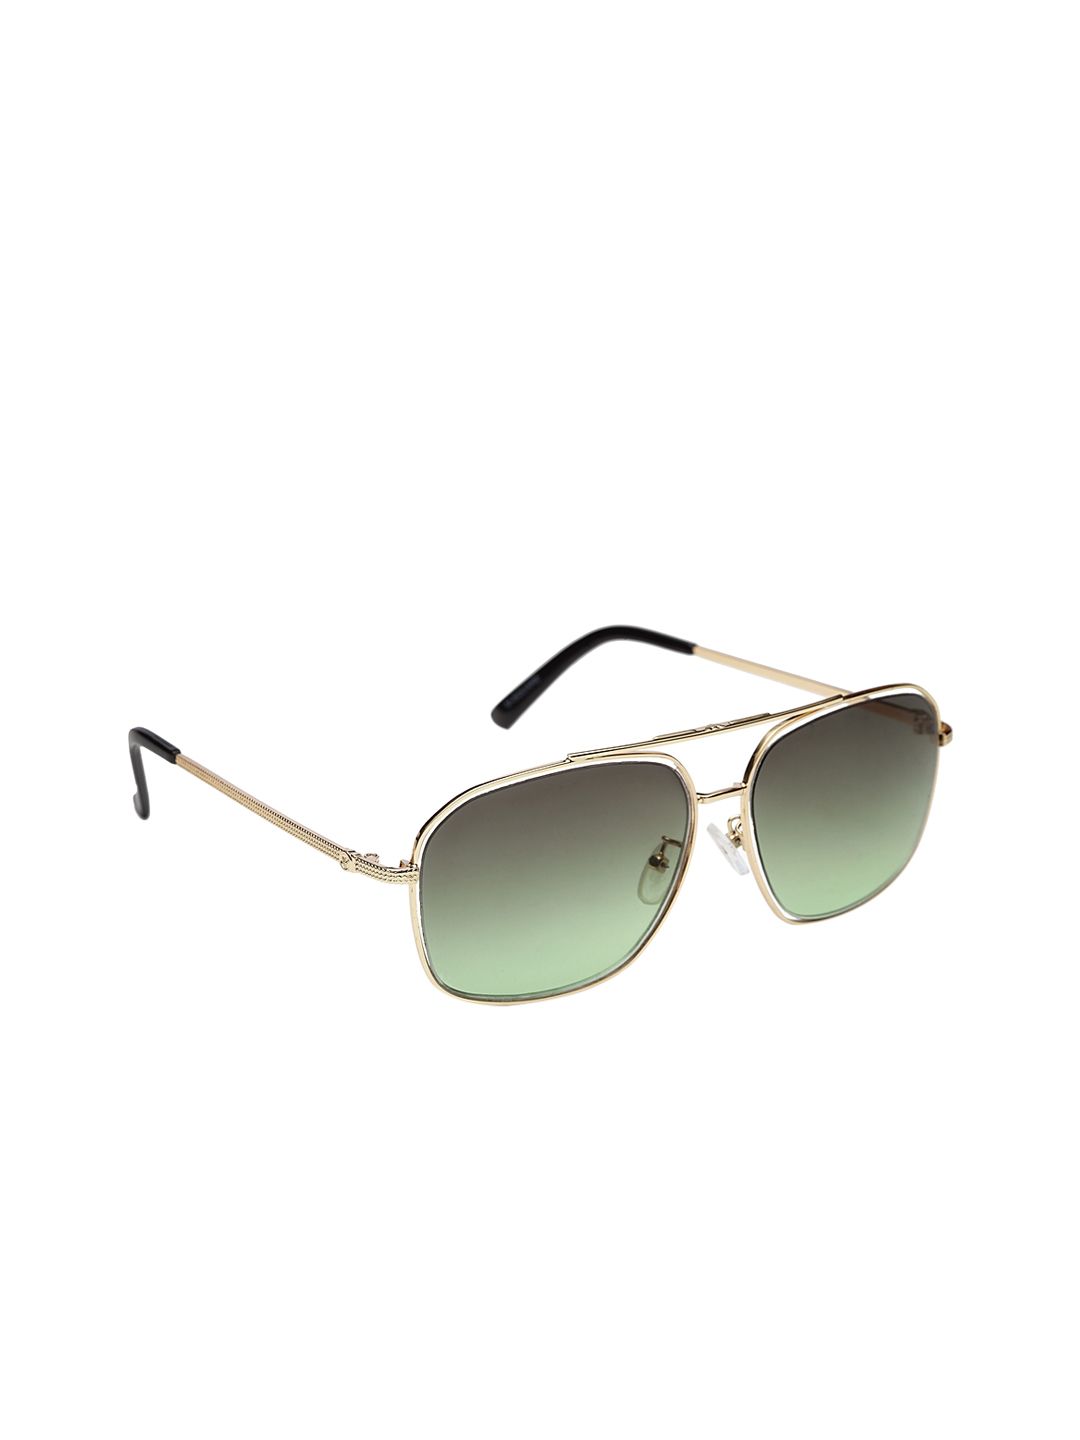 Get Glamr Unisex Square UV Protected Sunglasses SG-UN-MT-359-18 Price in India